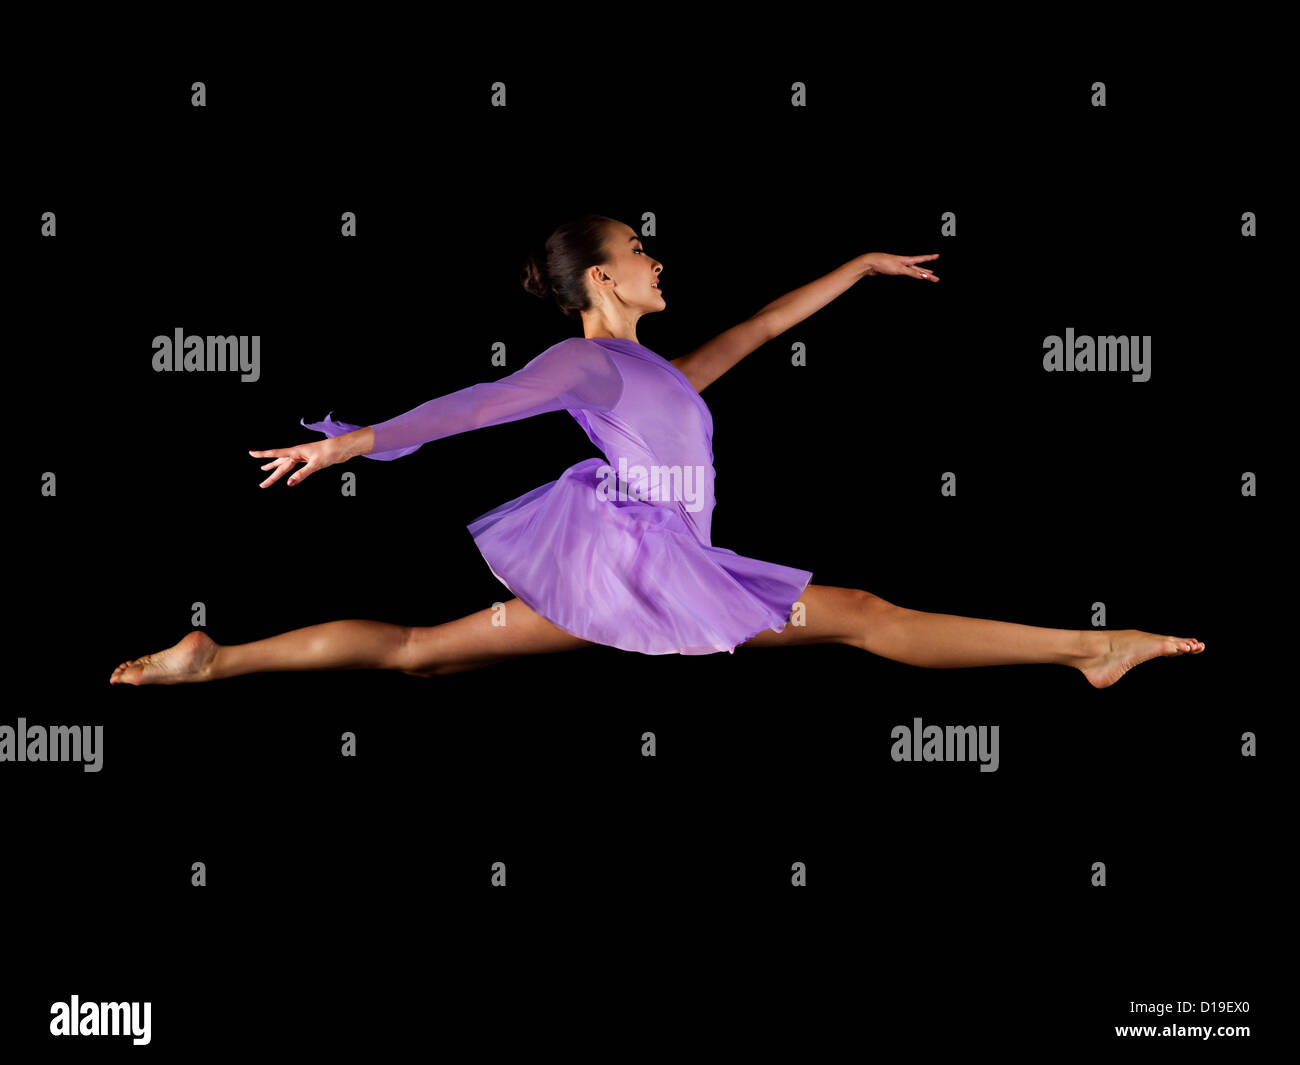 Ballerina, die den Spagat in der Luft zu tun Stockfotografie